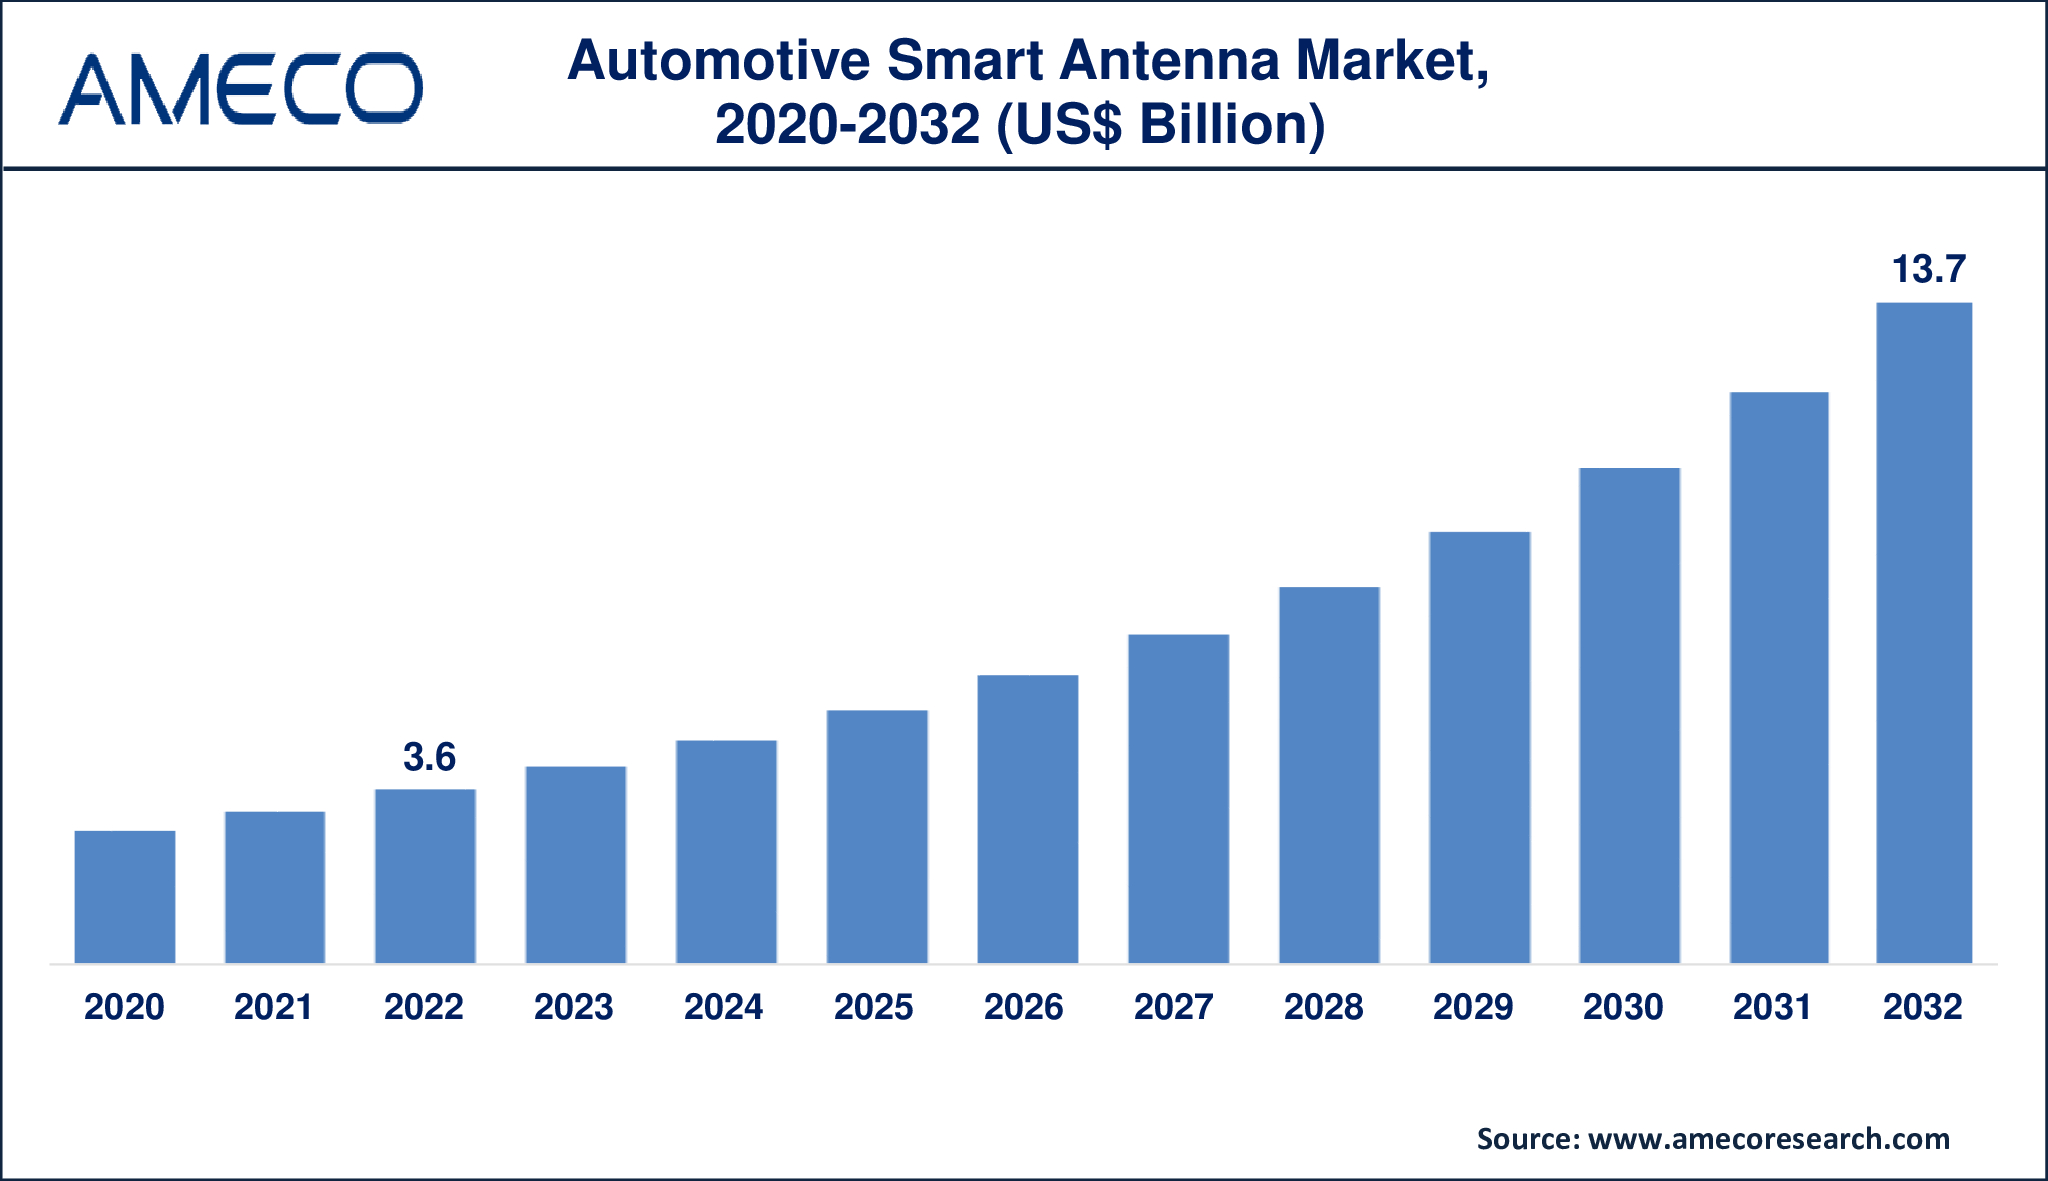 Automotive Smart Antenna Market Dynamics